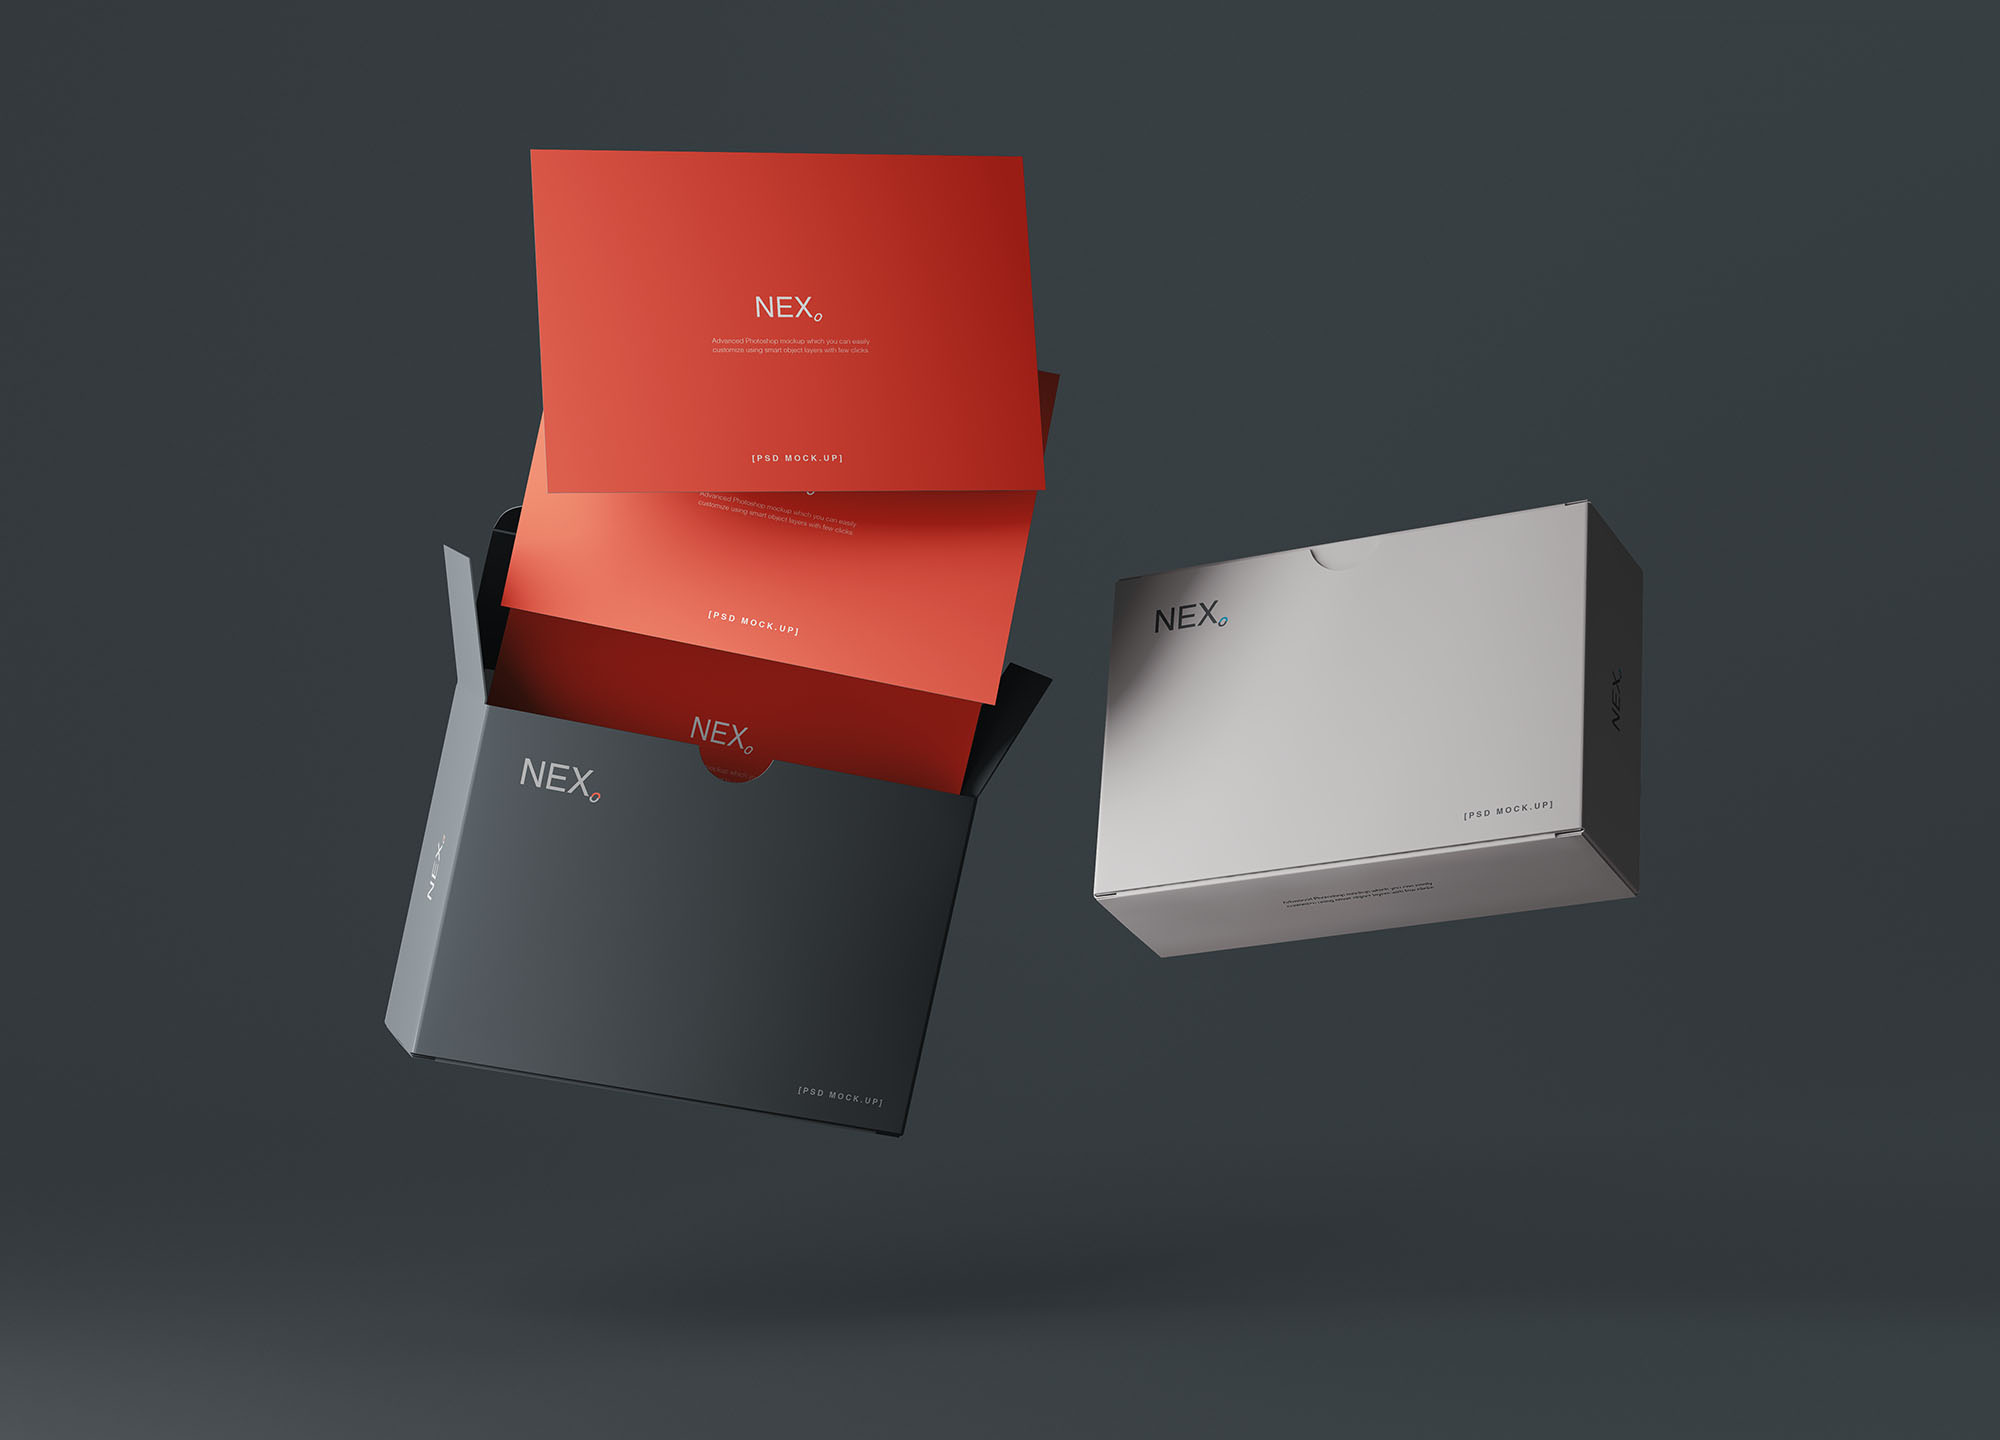 卡片包装盒外观设计效果图素材库精选 Card Box Mockup插图(7)